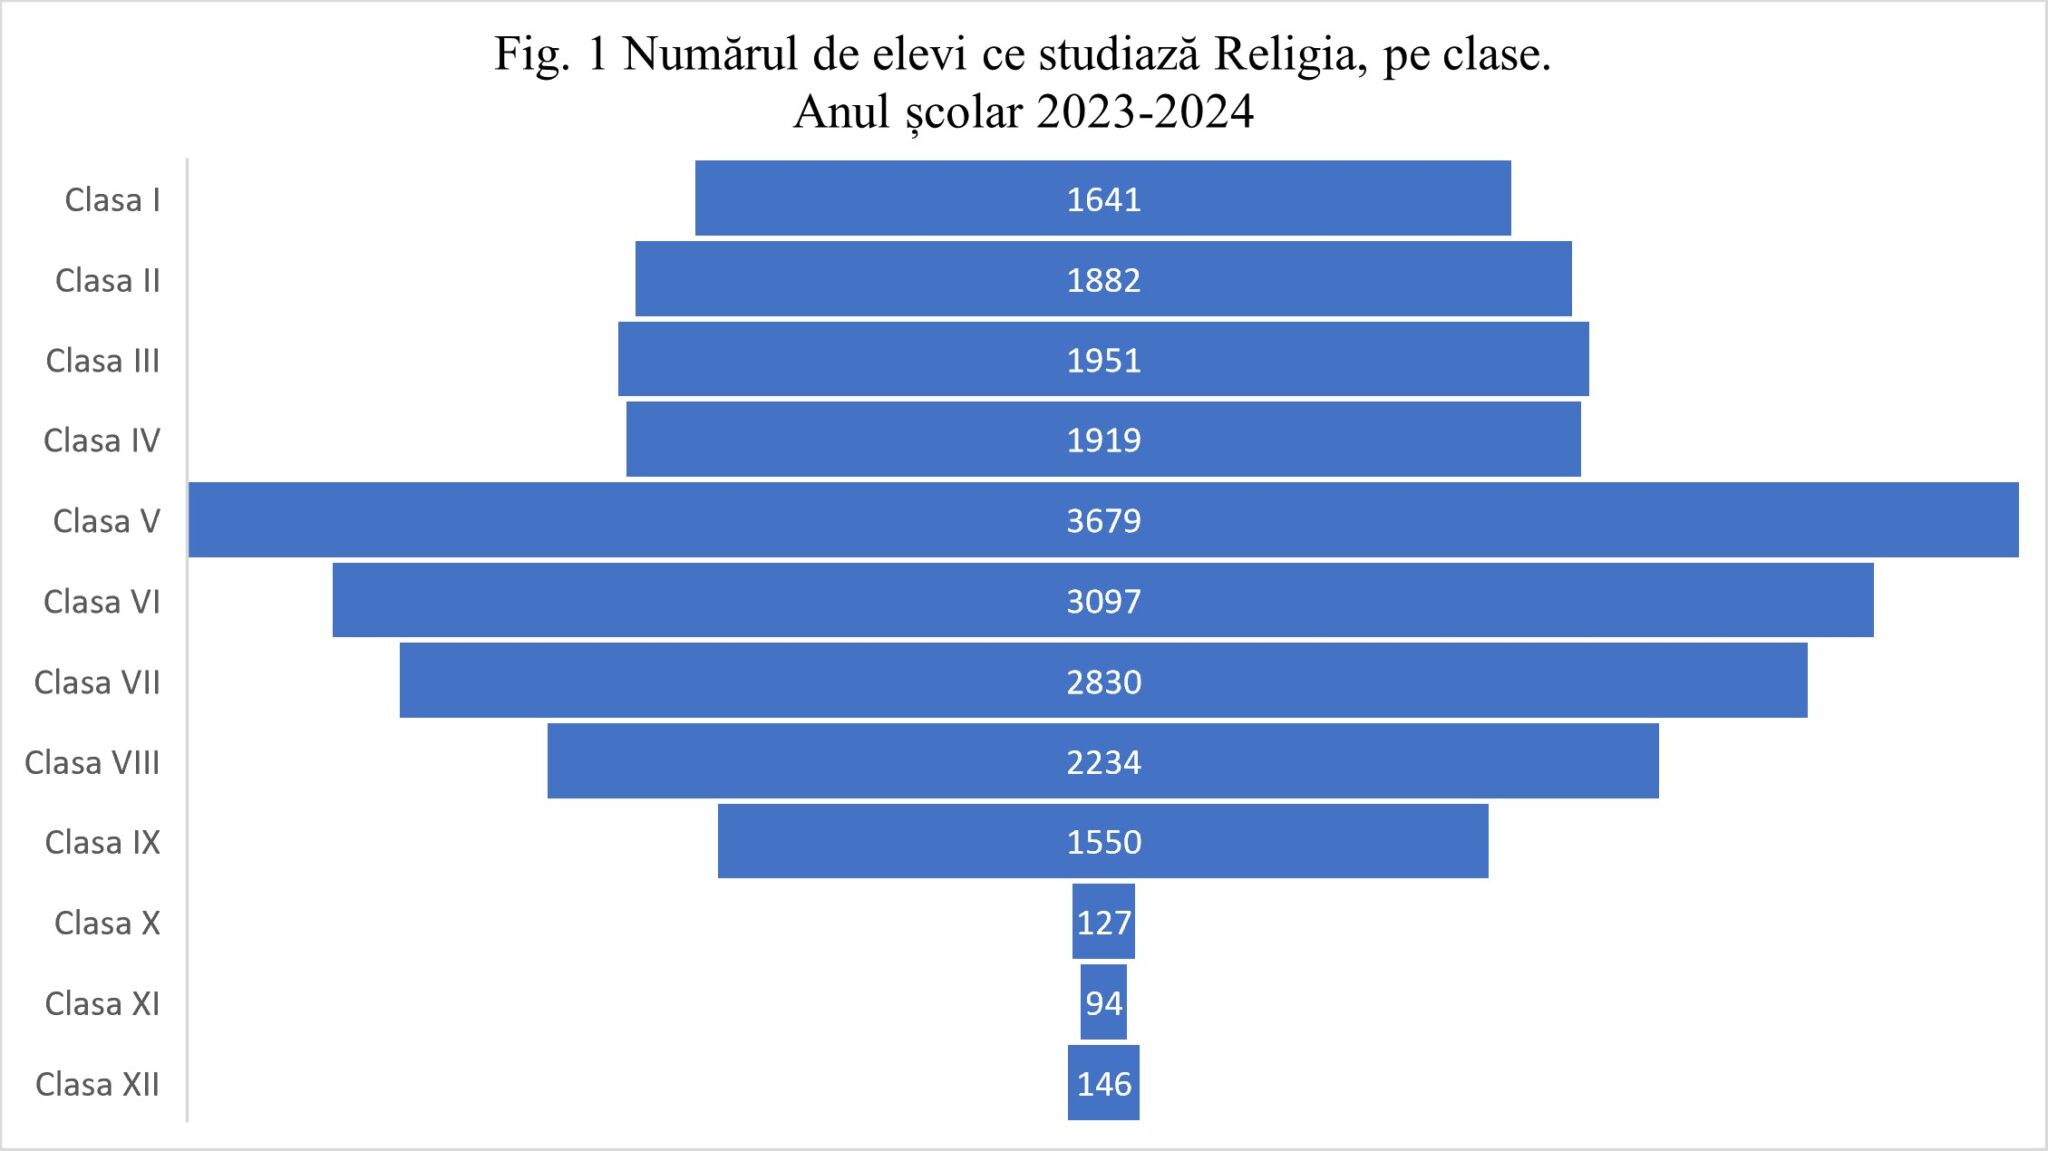 Religia în școli. Mitropolia Moldovei a publicat datele statistice pe clase